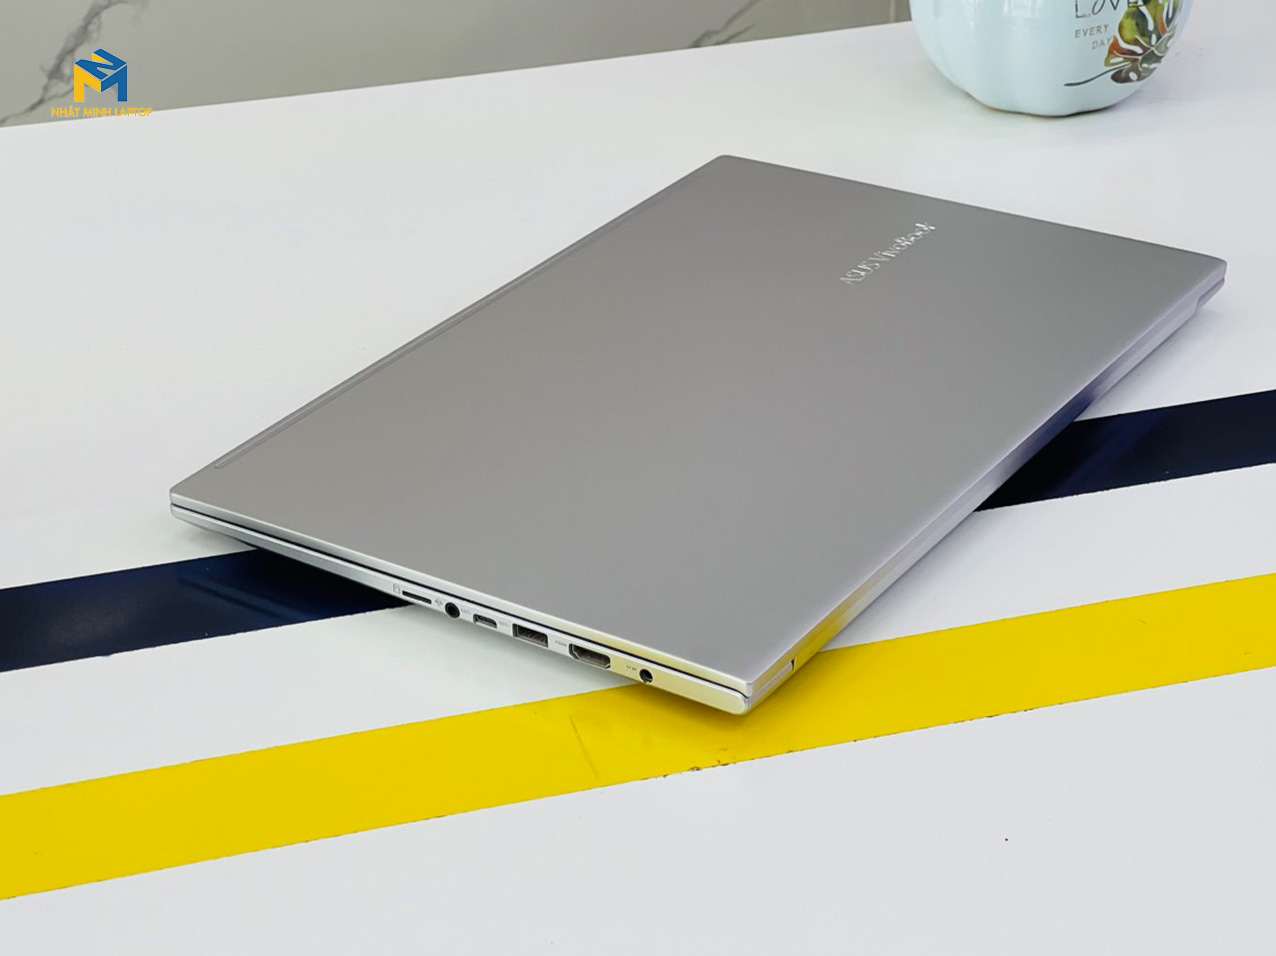 Asus Vivobook A515E (2021)